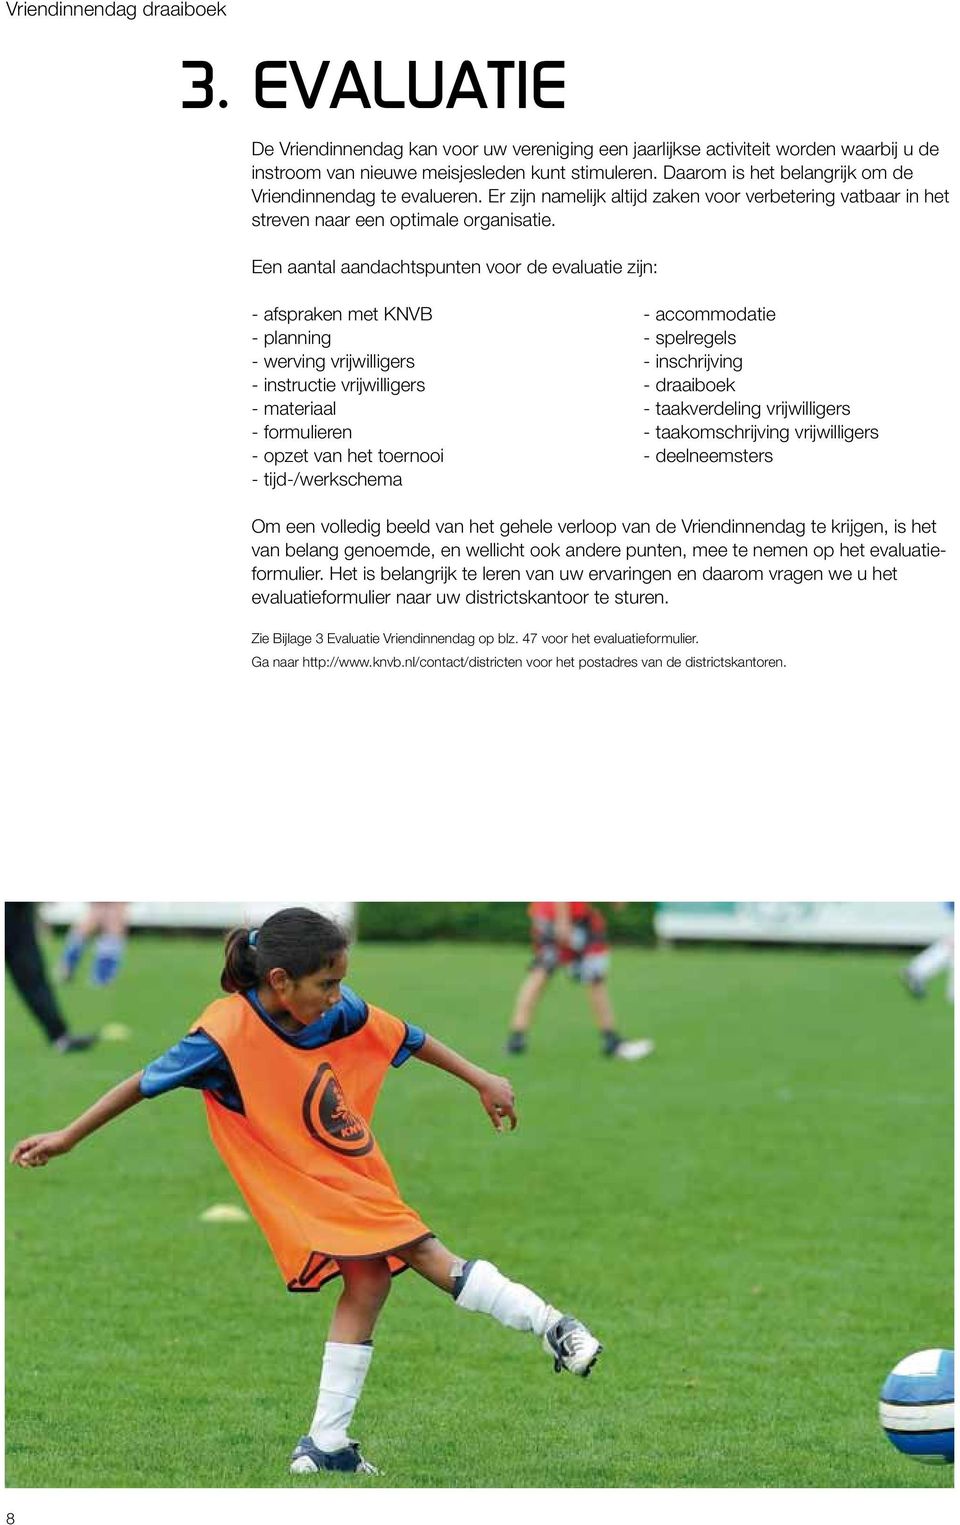 Een aantal aandachtspunten voor de evaluatie zijn: - afspraken met KNVB - accommodatie - planning - spelregels - werving vrijwilligers - inschrijving - instructie vrijwilligers - draaiboek -